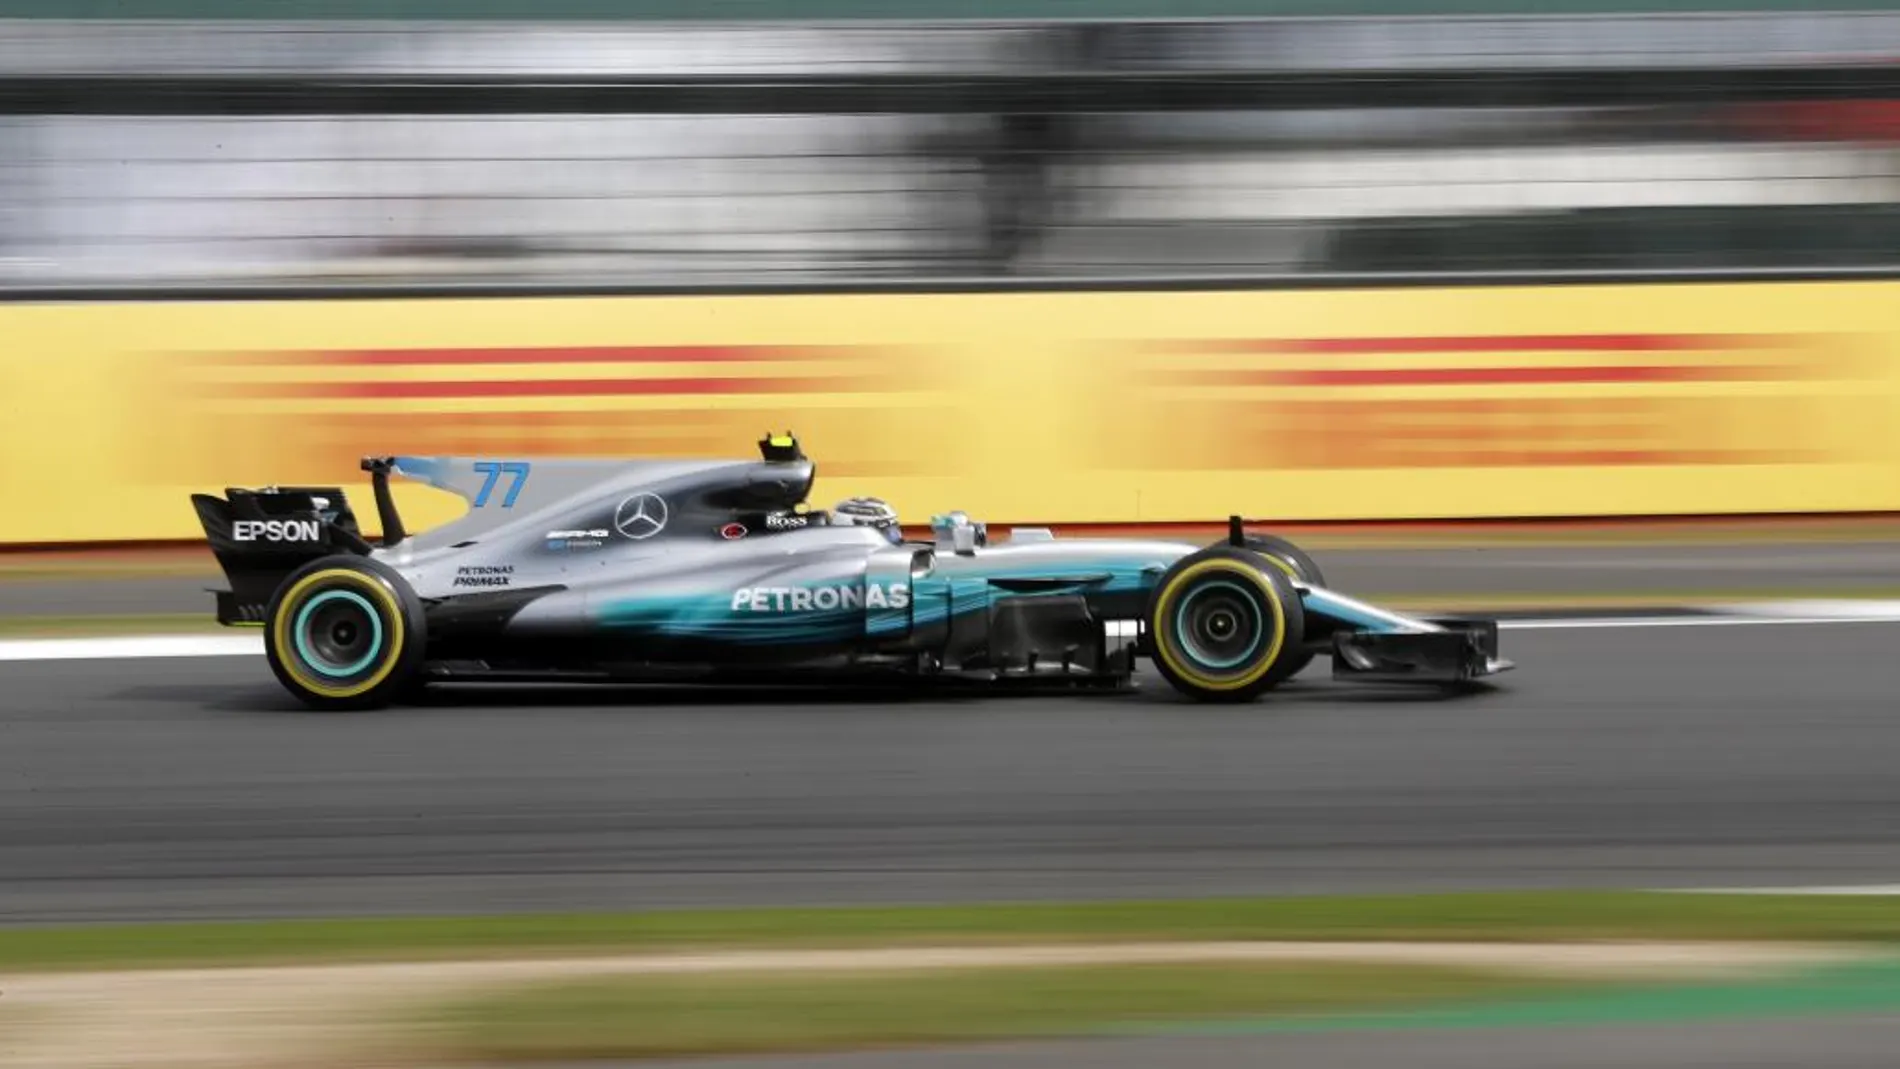 Los Mercedes dominaron la primera sesión. Bottas se impuso a Hamilton por 0.078